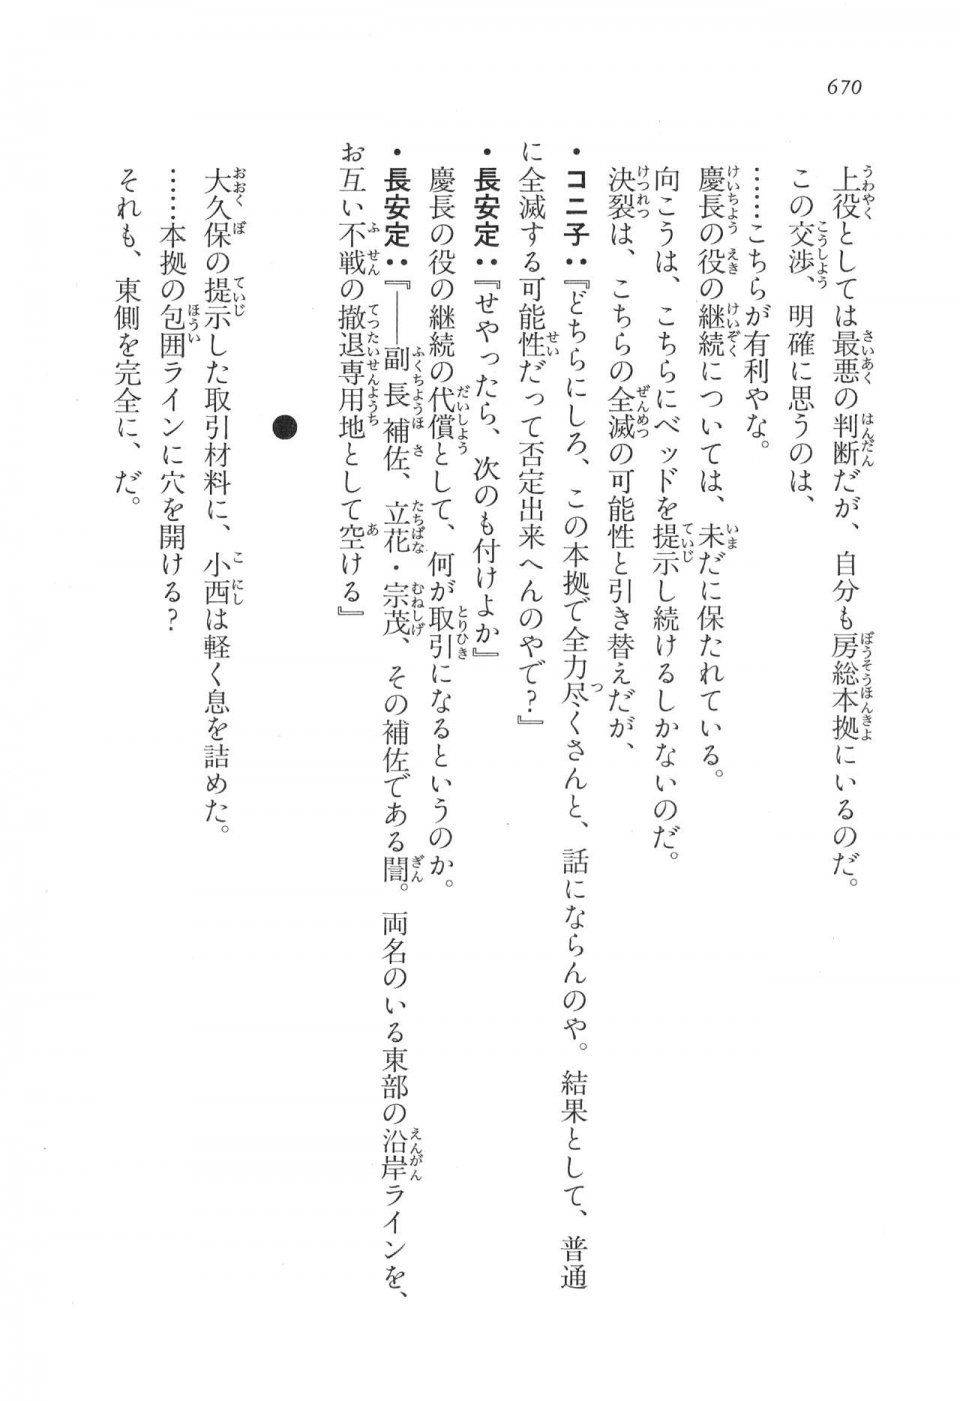 Kyoukai Senjou no Horizon LN Vol 17(7B) - Photo #672